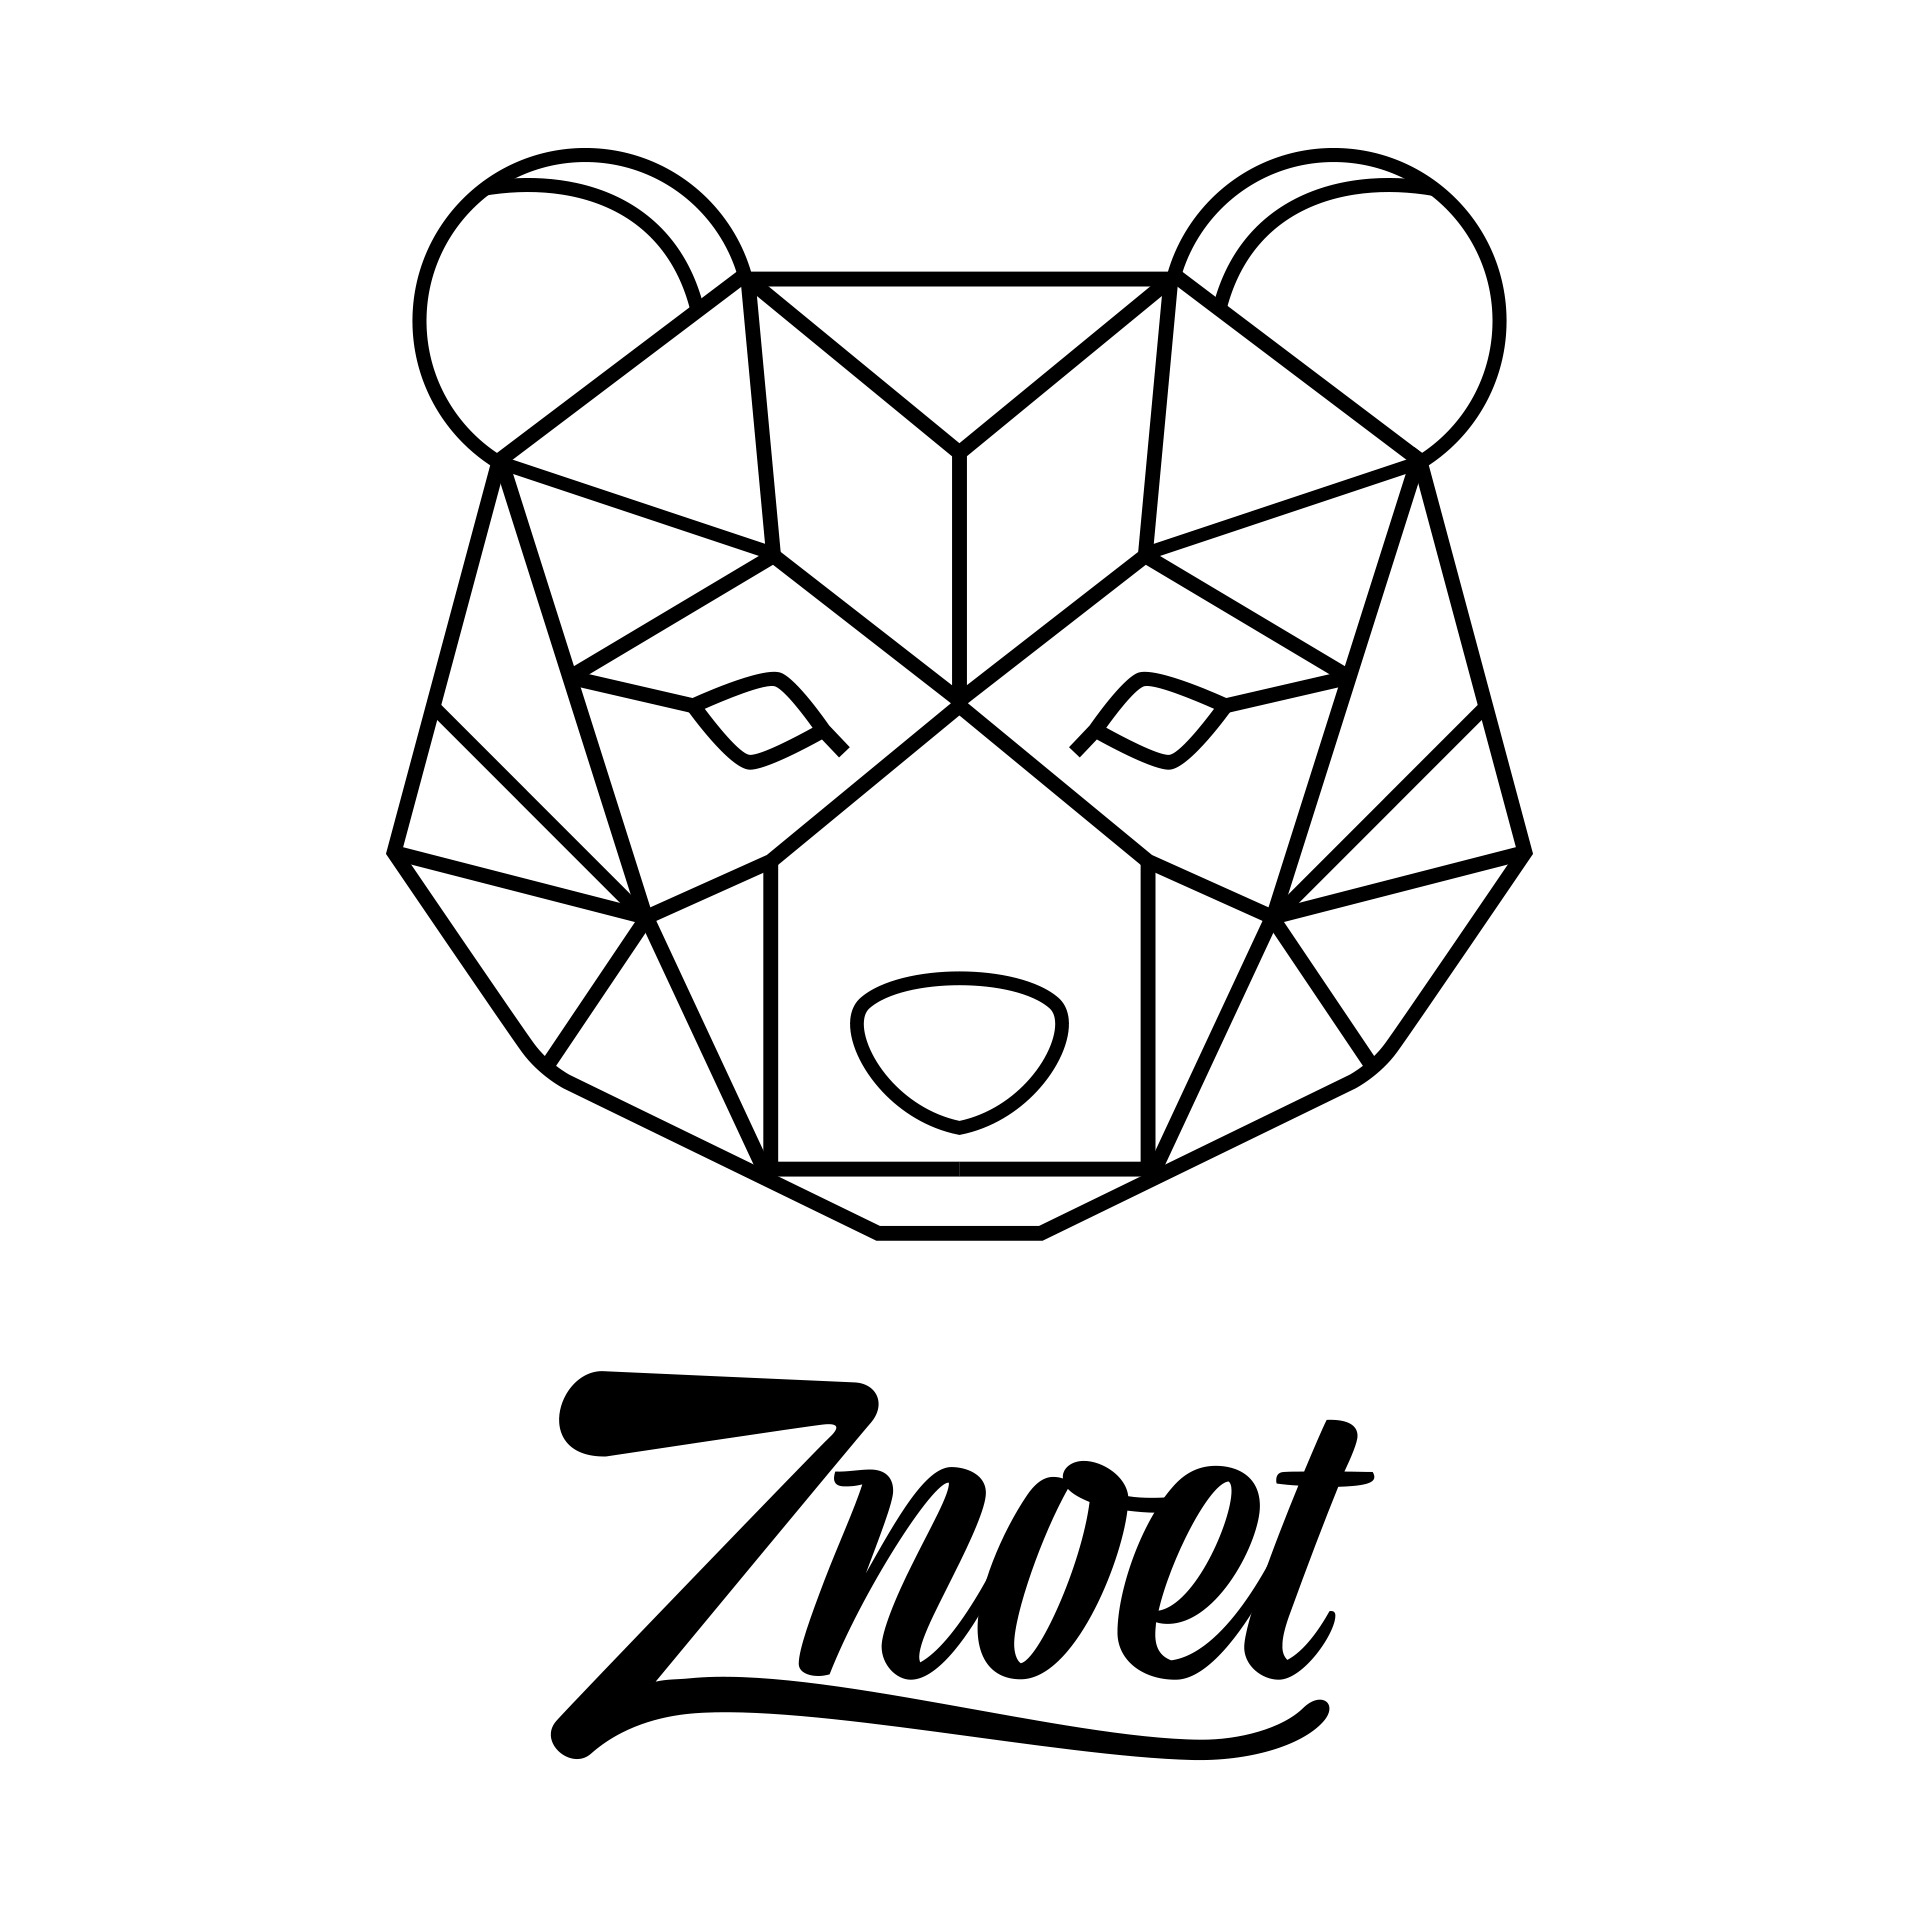 Znoet - Logo